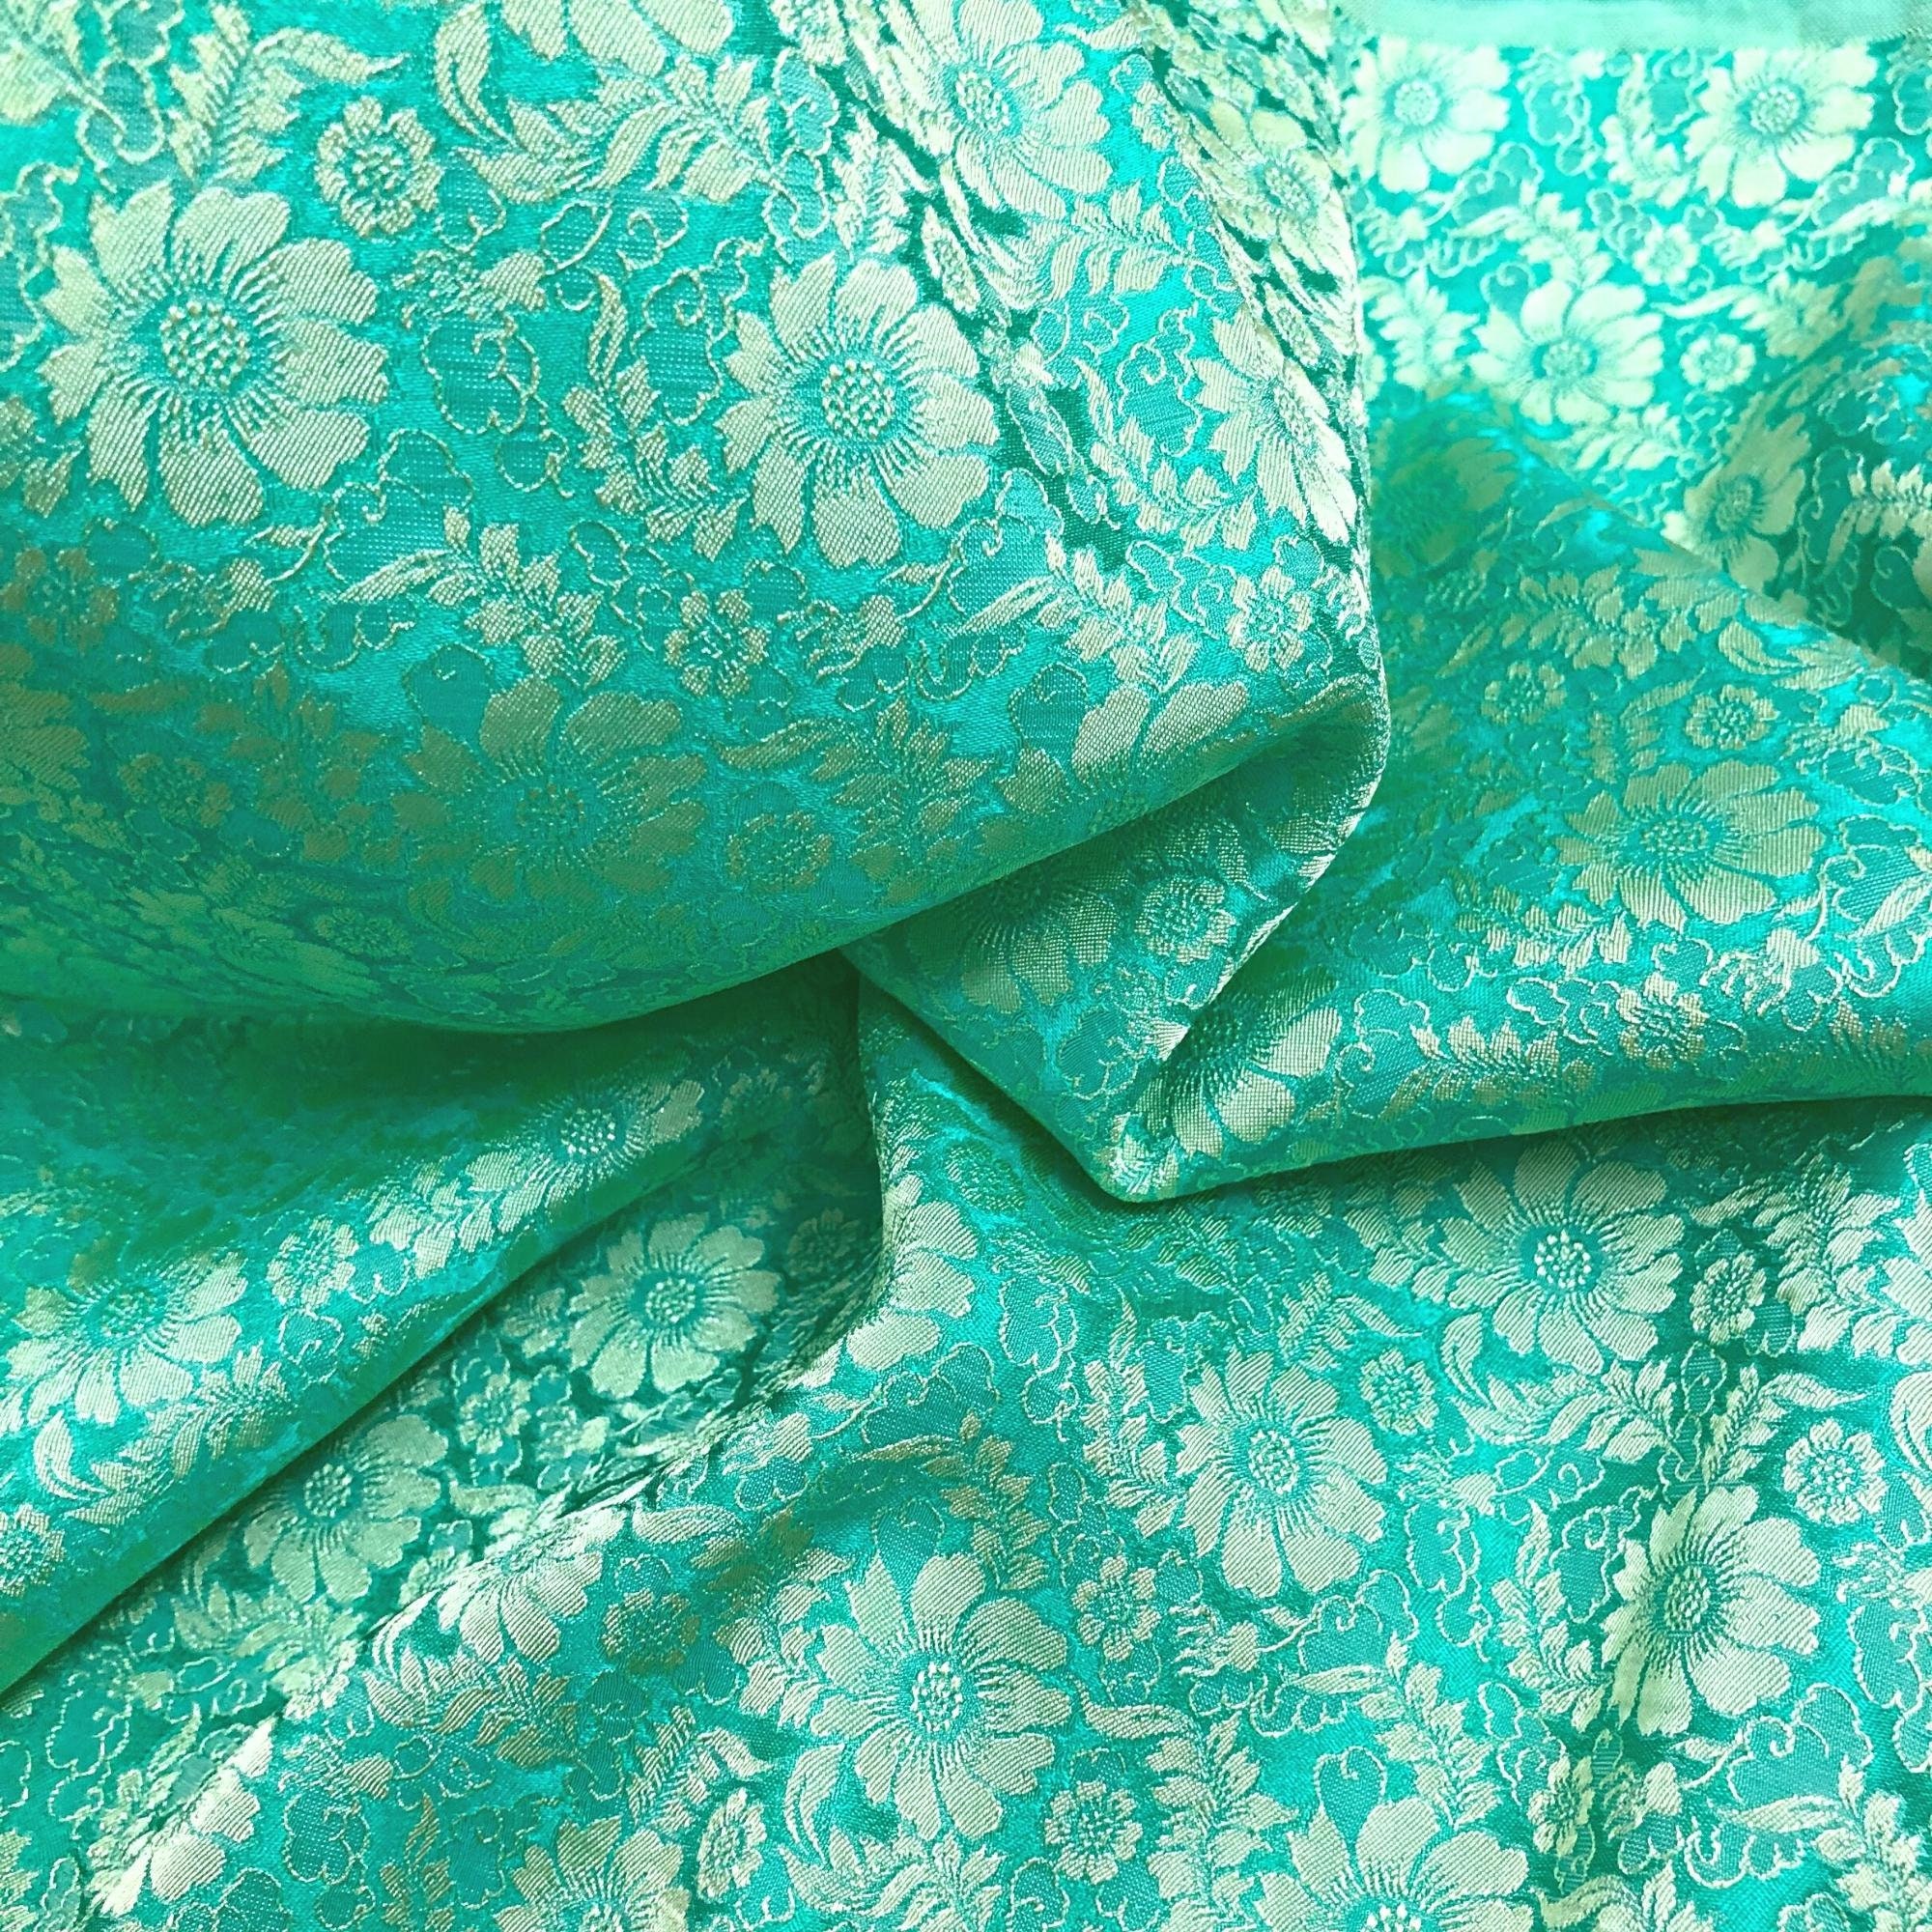 Vải Lụa Tơ Tằm hoa cúc xanh lam may áo dài, mềm#mượt#mịn, dệt thủ công, khổ vải 90cm